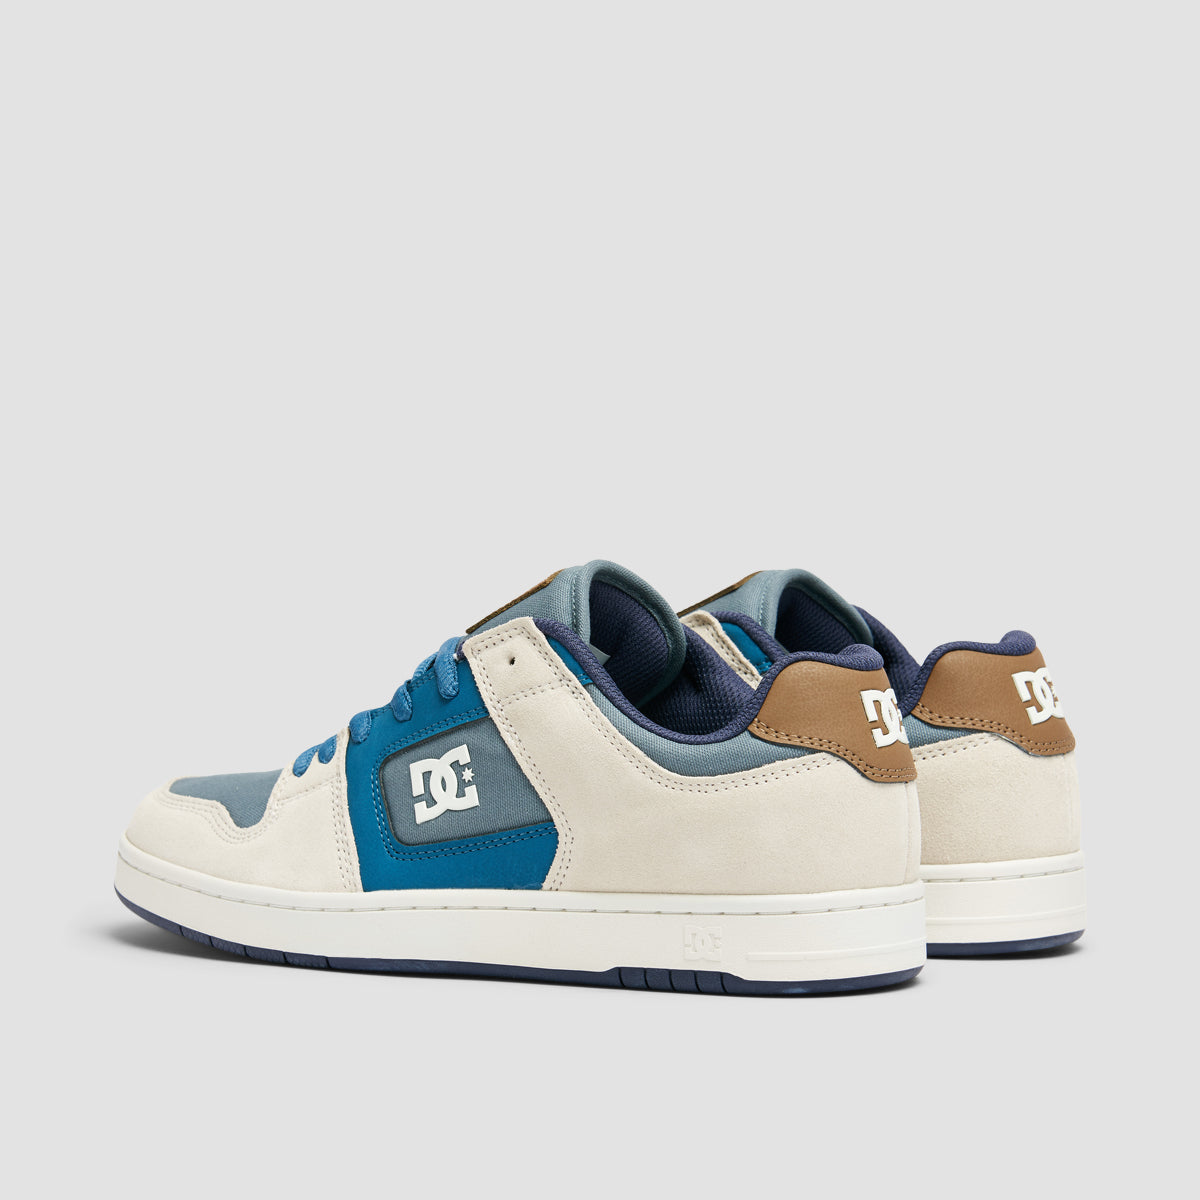 DC Manteca 4 Shoes - Grey/Blue/White